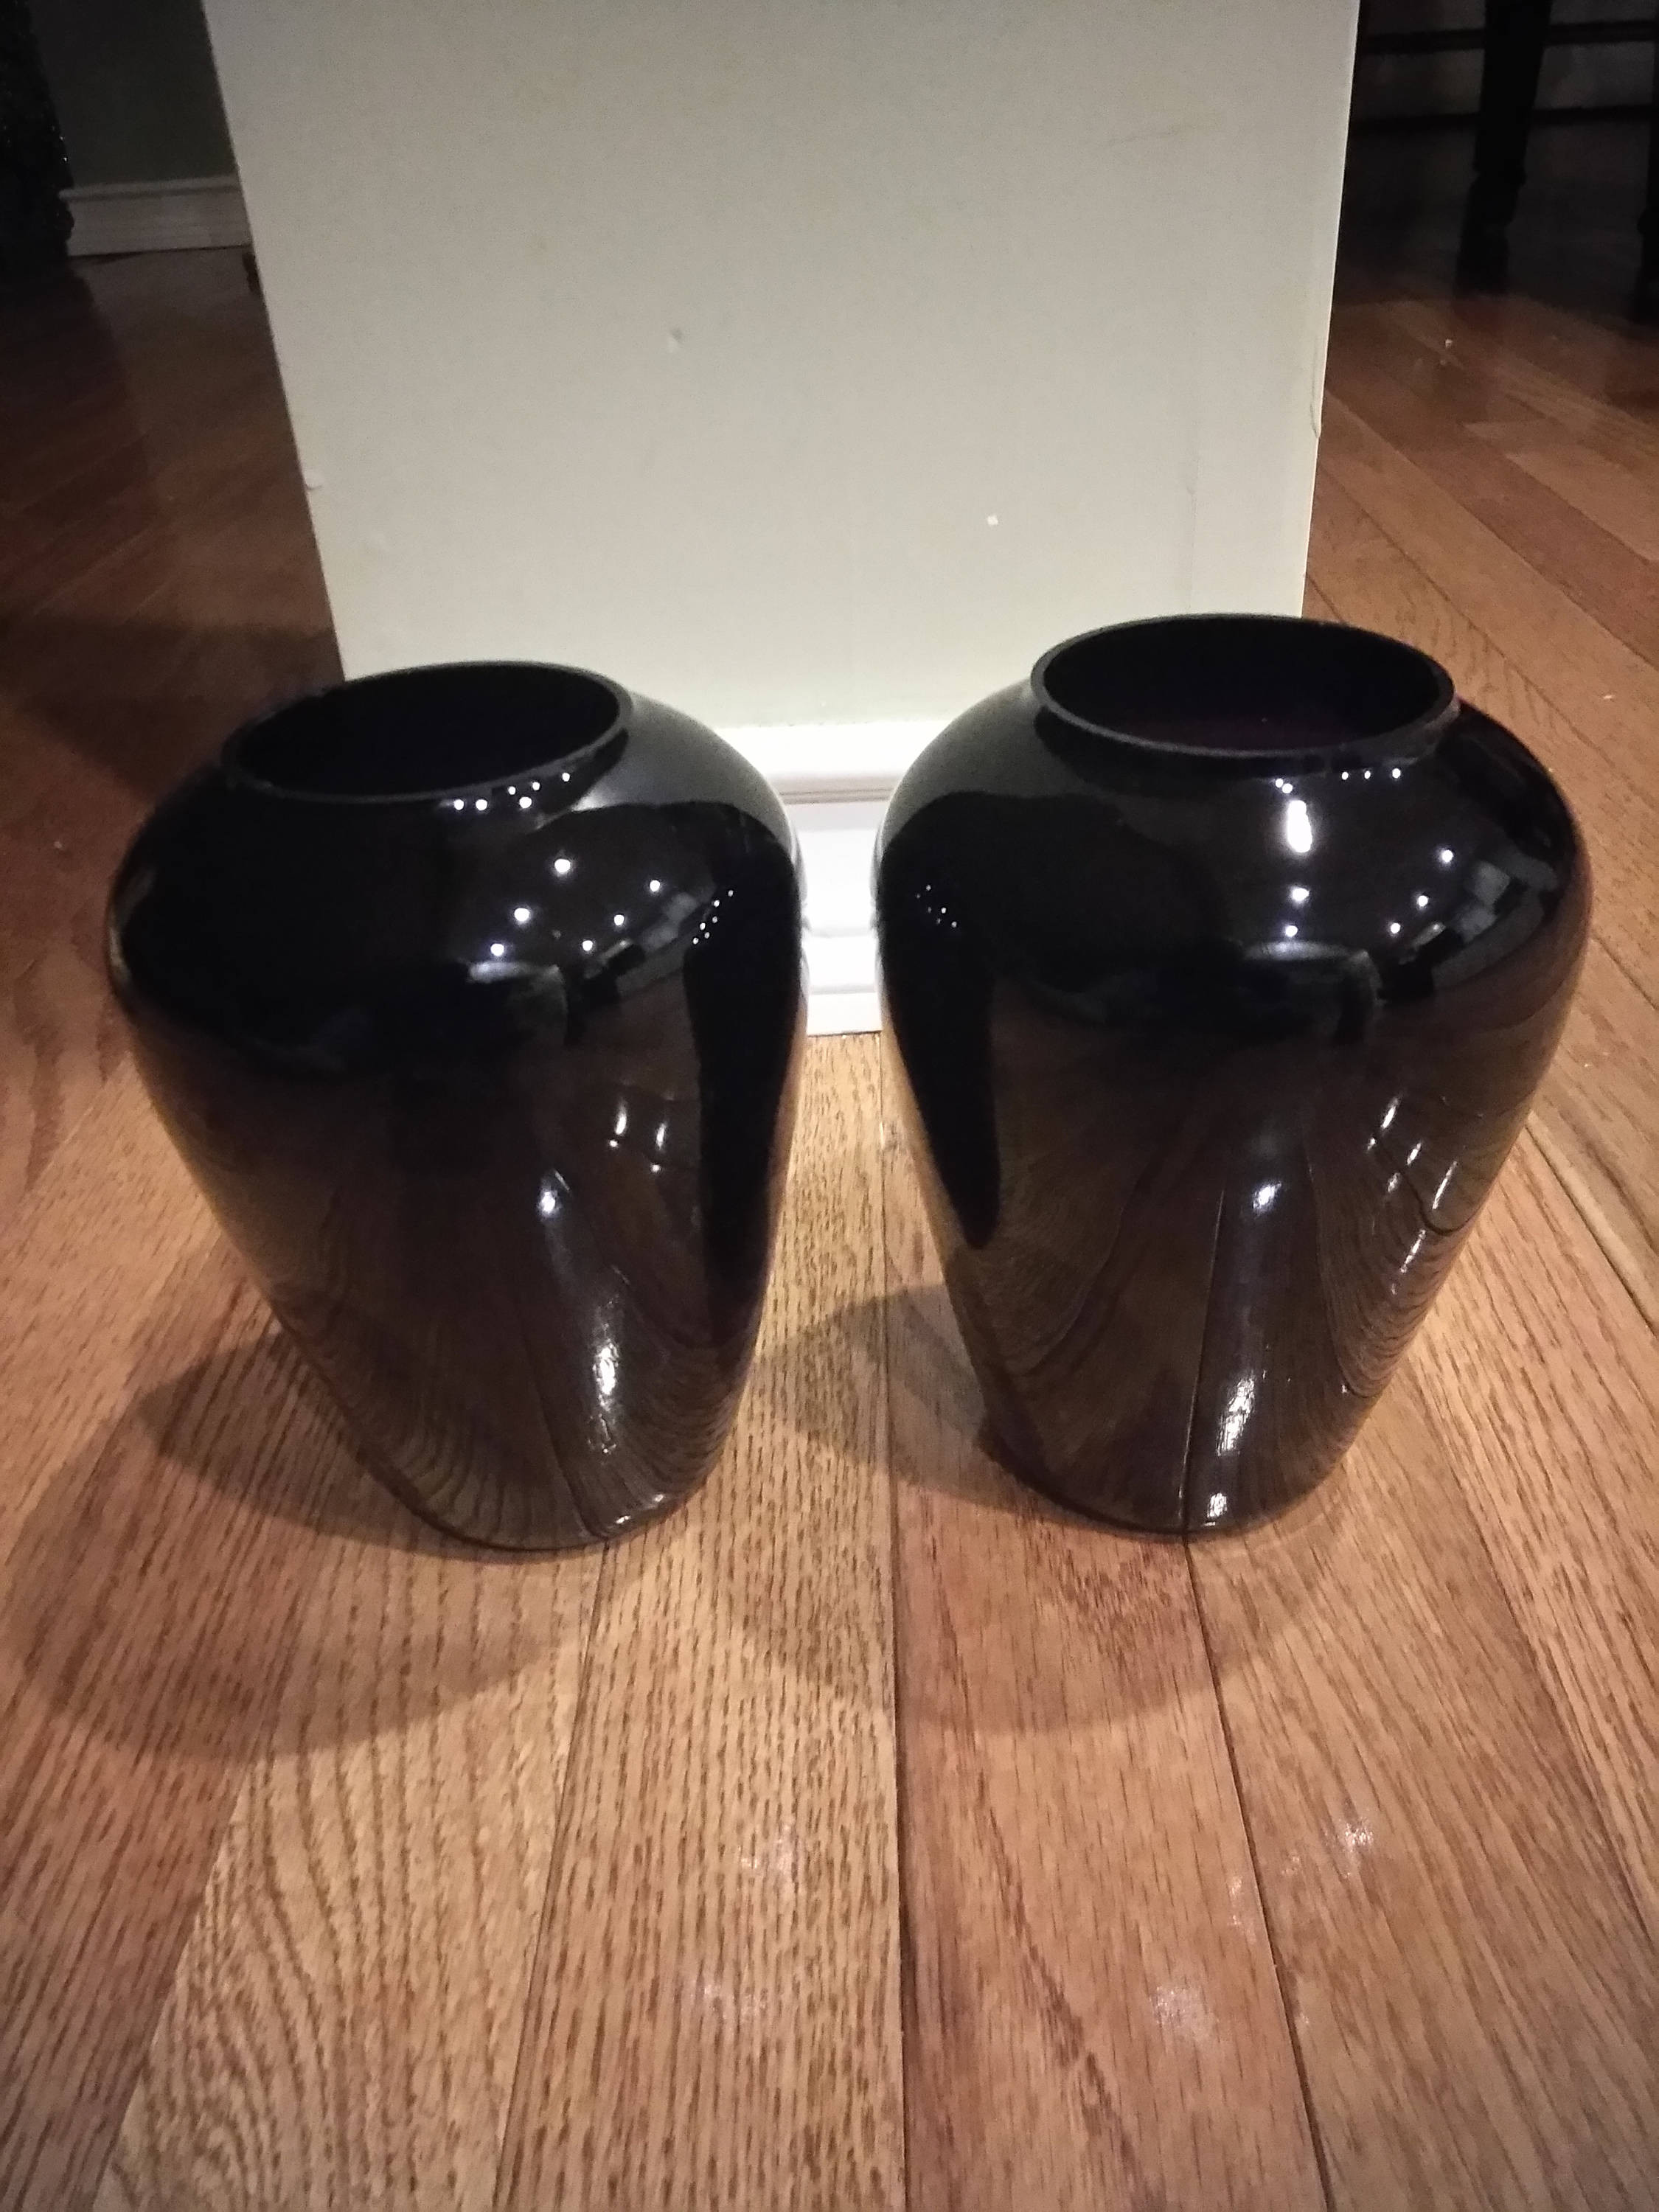 12 Elegant Vintage Lead Crystal Vase 2024 free download vintage lead crystal vase of twin vintage amethyst black glass urn vases for dc29fc294c28ezoom